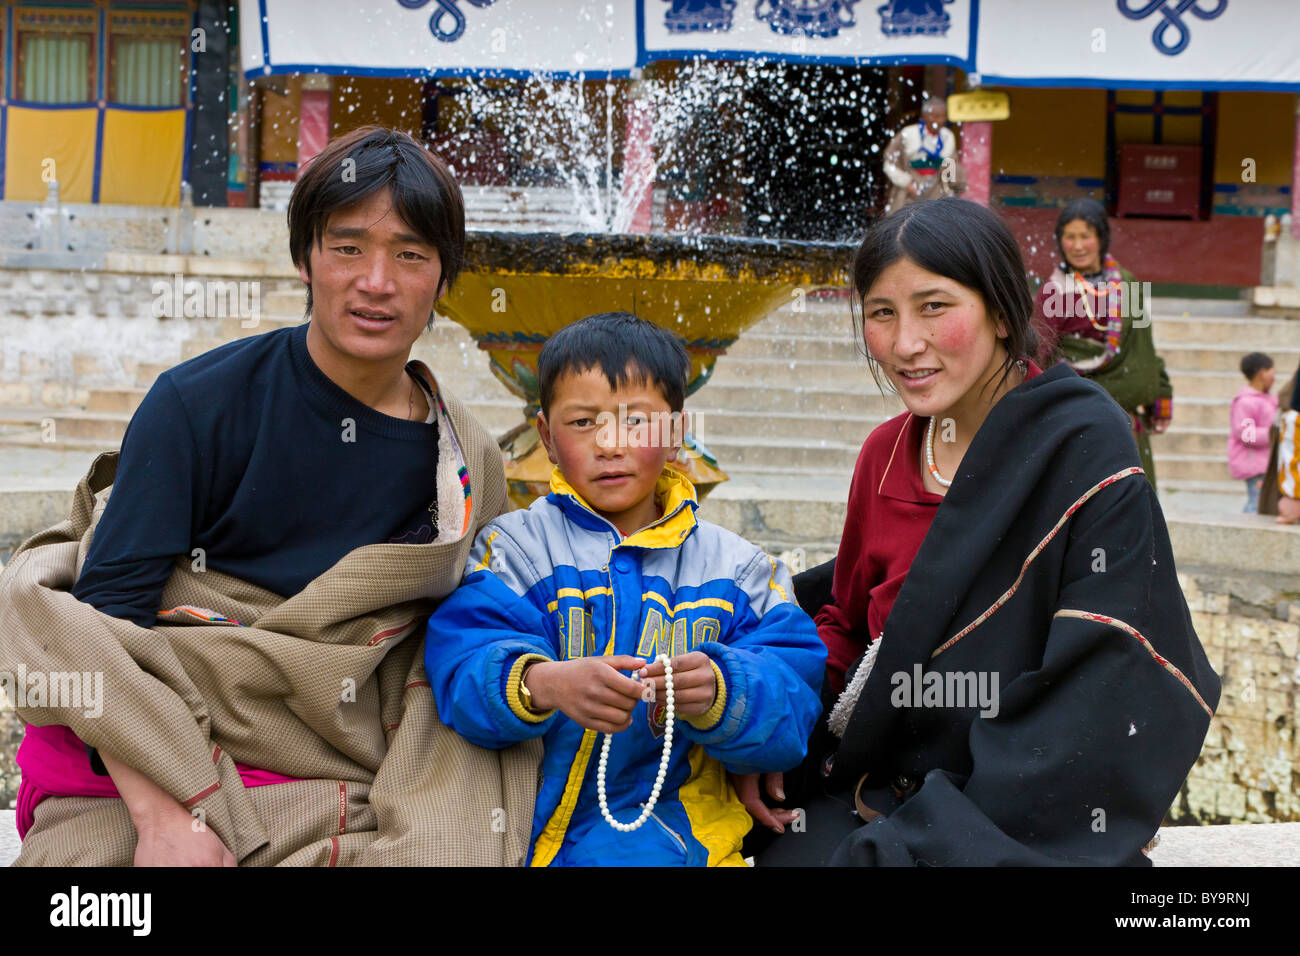 La familia tibetana nómada peregrina en Norbulingka o Joya Park, Migyur Tagten Podrang, Lhasa, Tibet, China. JMH 4702 Foto de stock